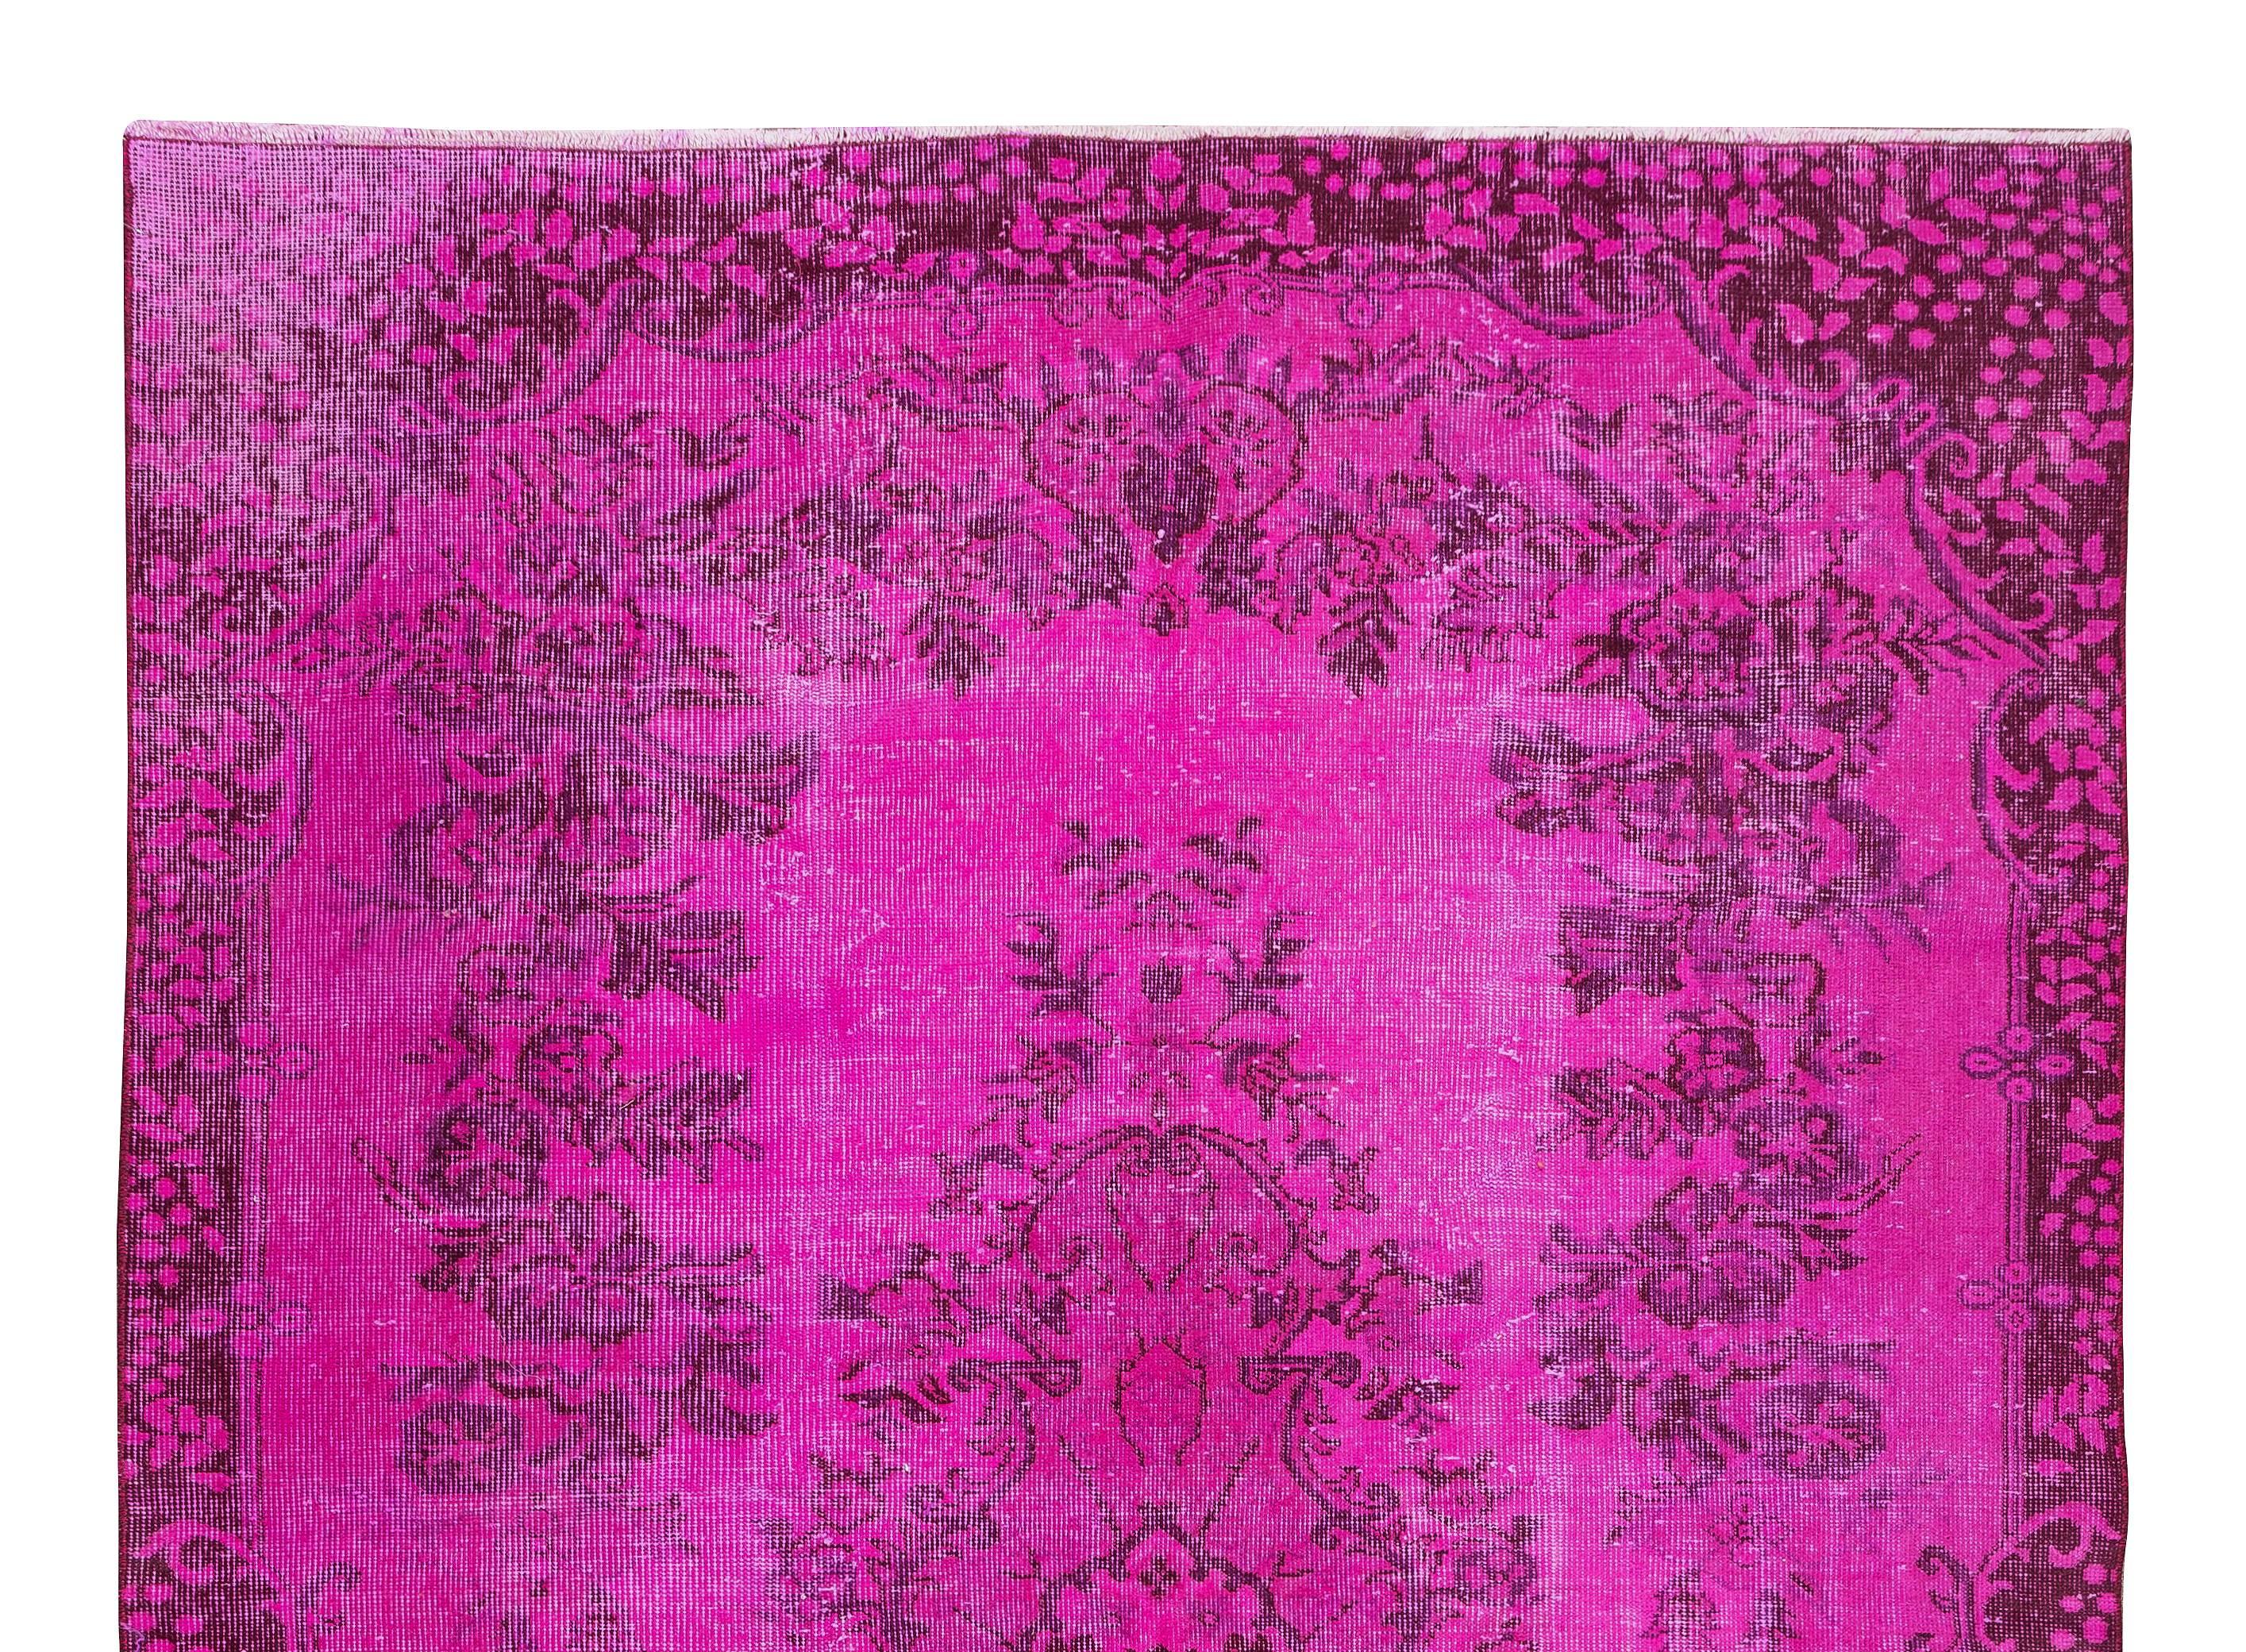 Turc 5.8x8.7 Ft Vintage Rug OverDyed in Pink for Modern Interiors, Handmade in Turkey (tapis vintage surteint en rose pour les intérieurs modernes, fait à la main en Turquie) en vente